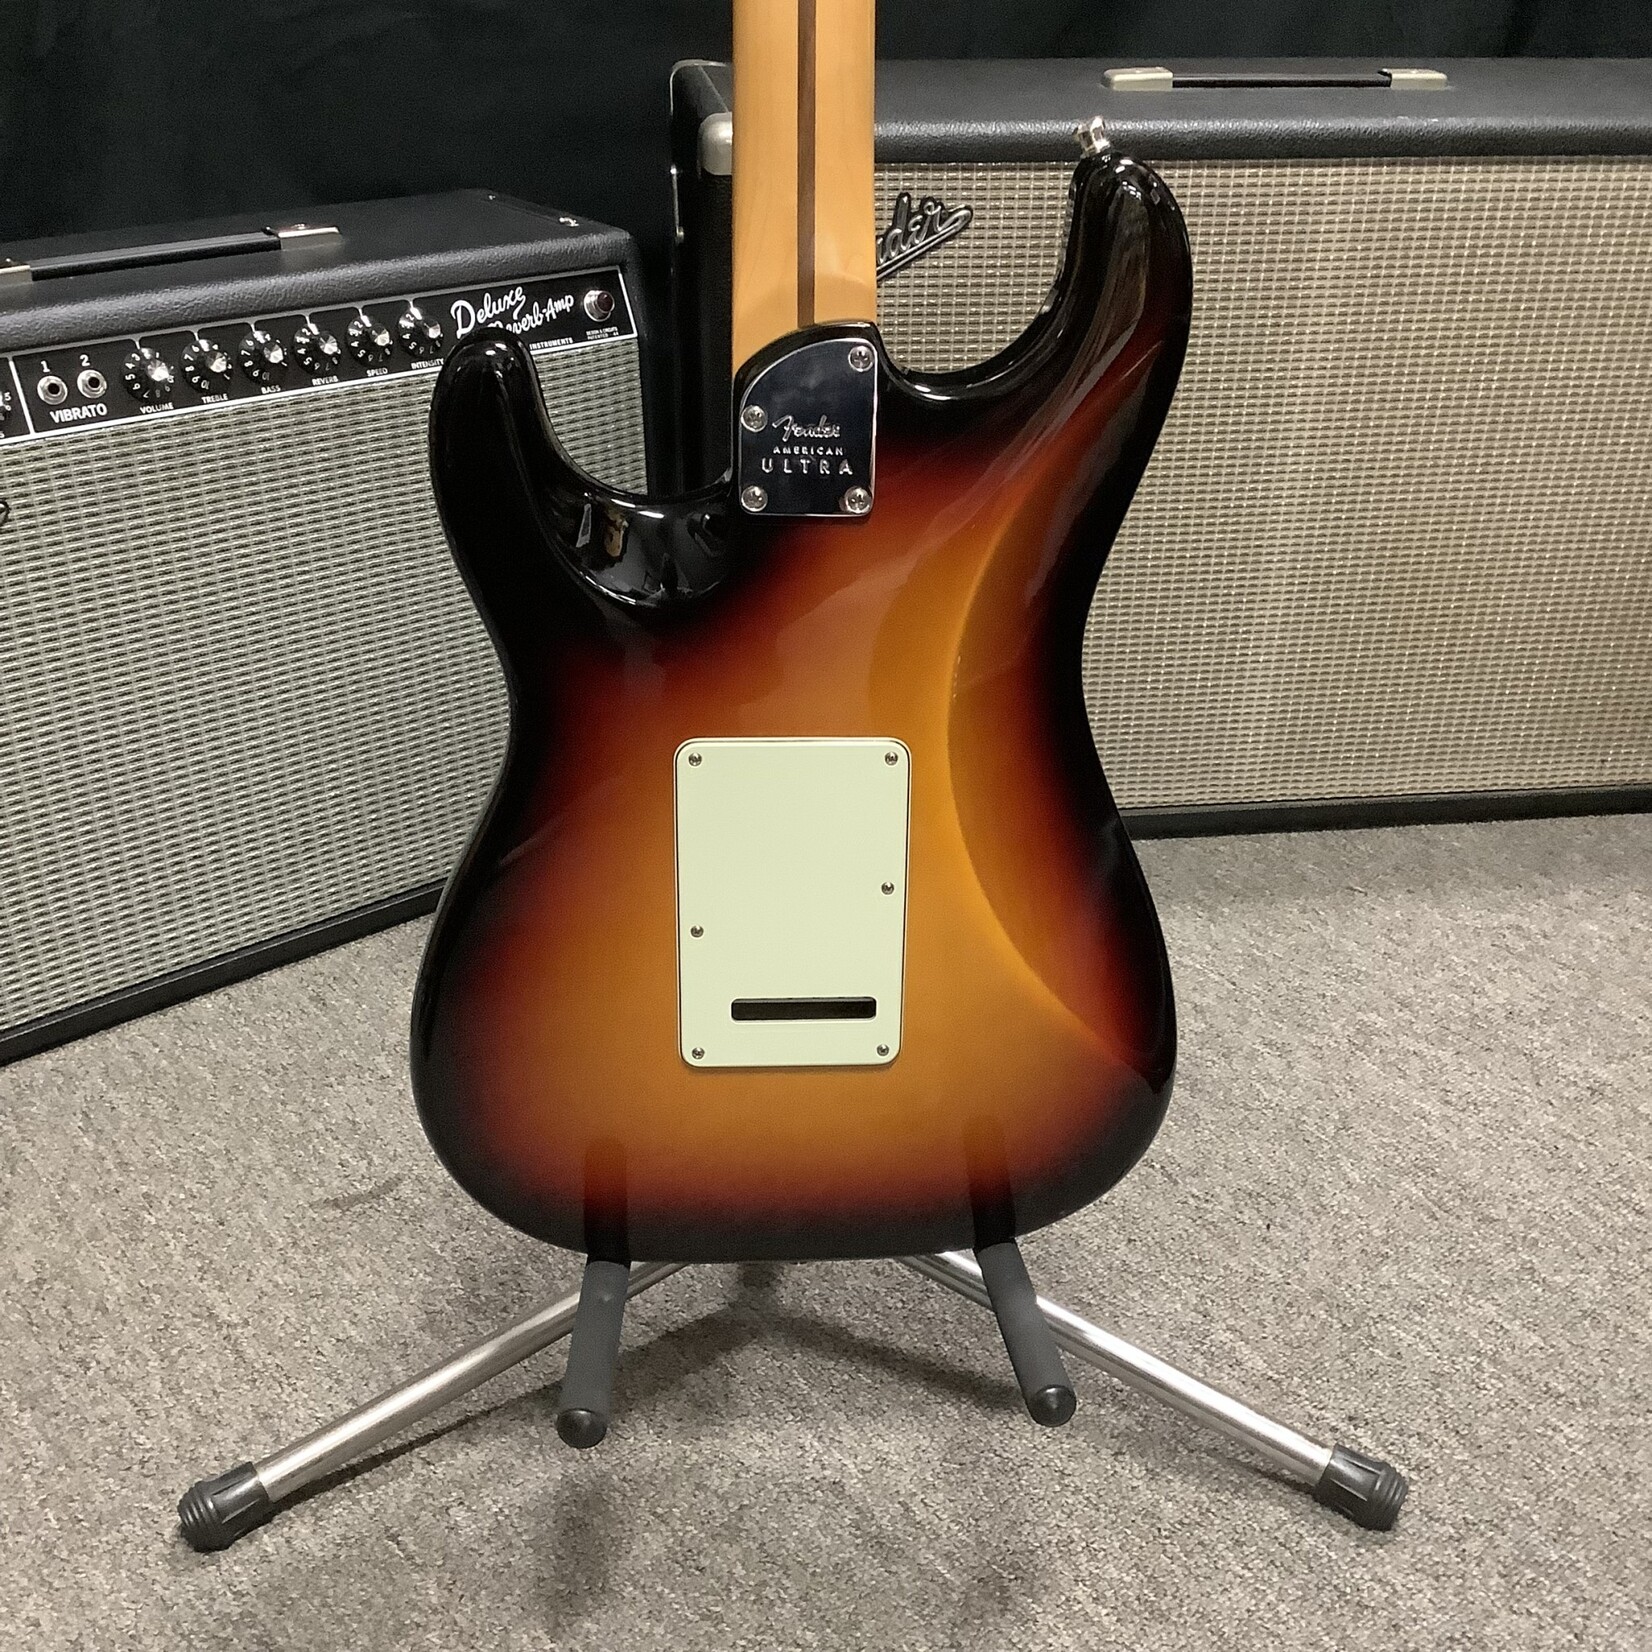 Fender 2019 Fender American Ultra Stratocaster Ultraburst